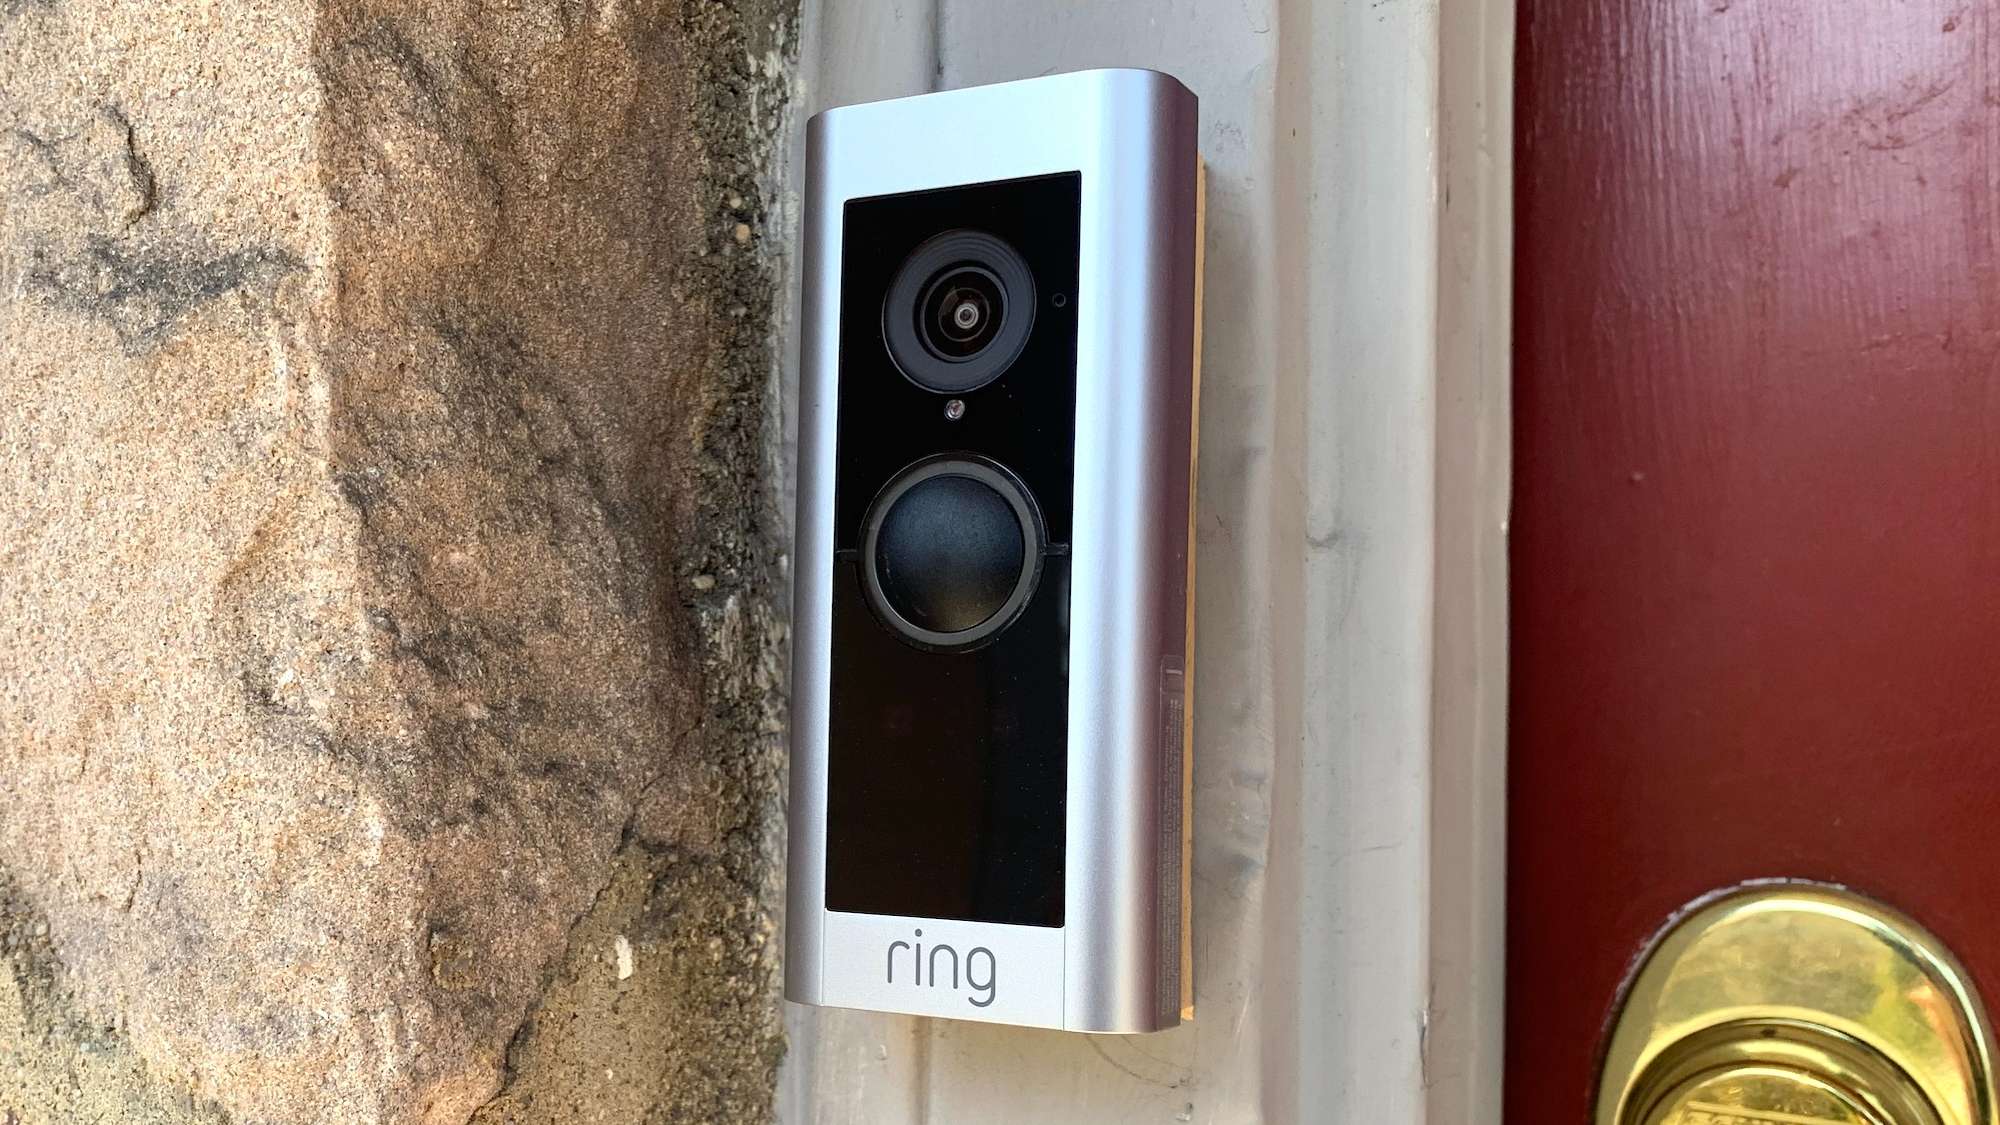 Ring Video Doorbell Pro 2 review: Ring's best doorbell yet - The Verge